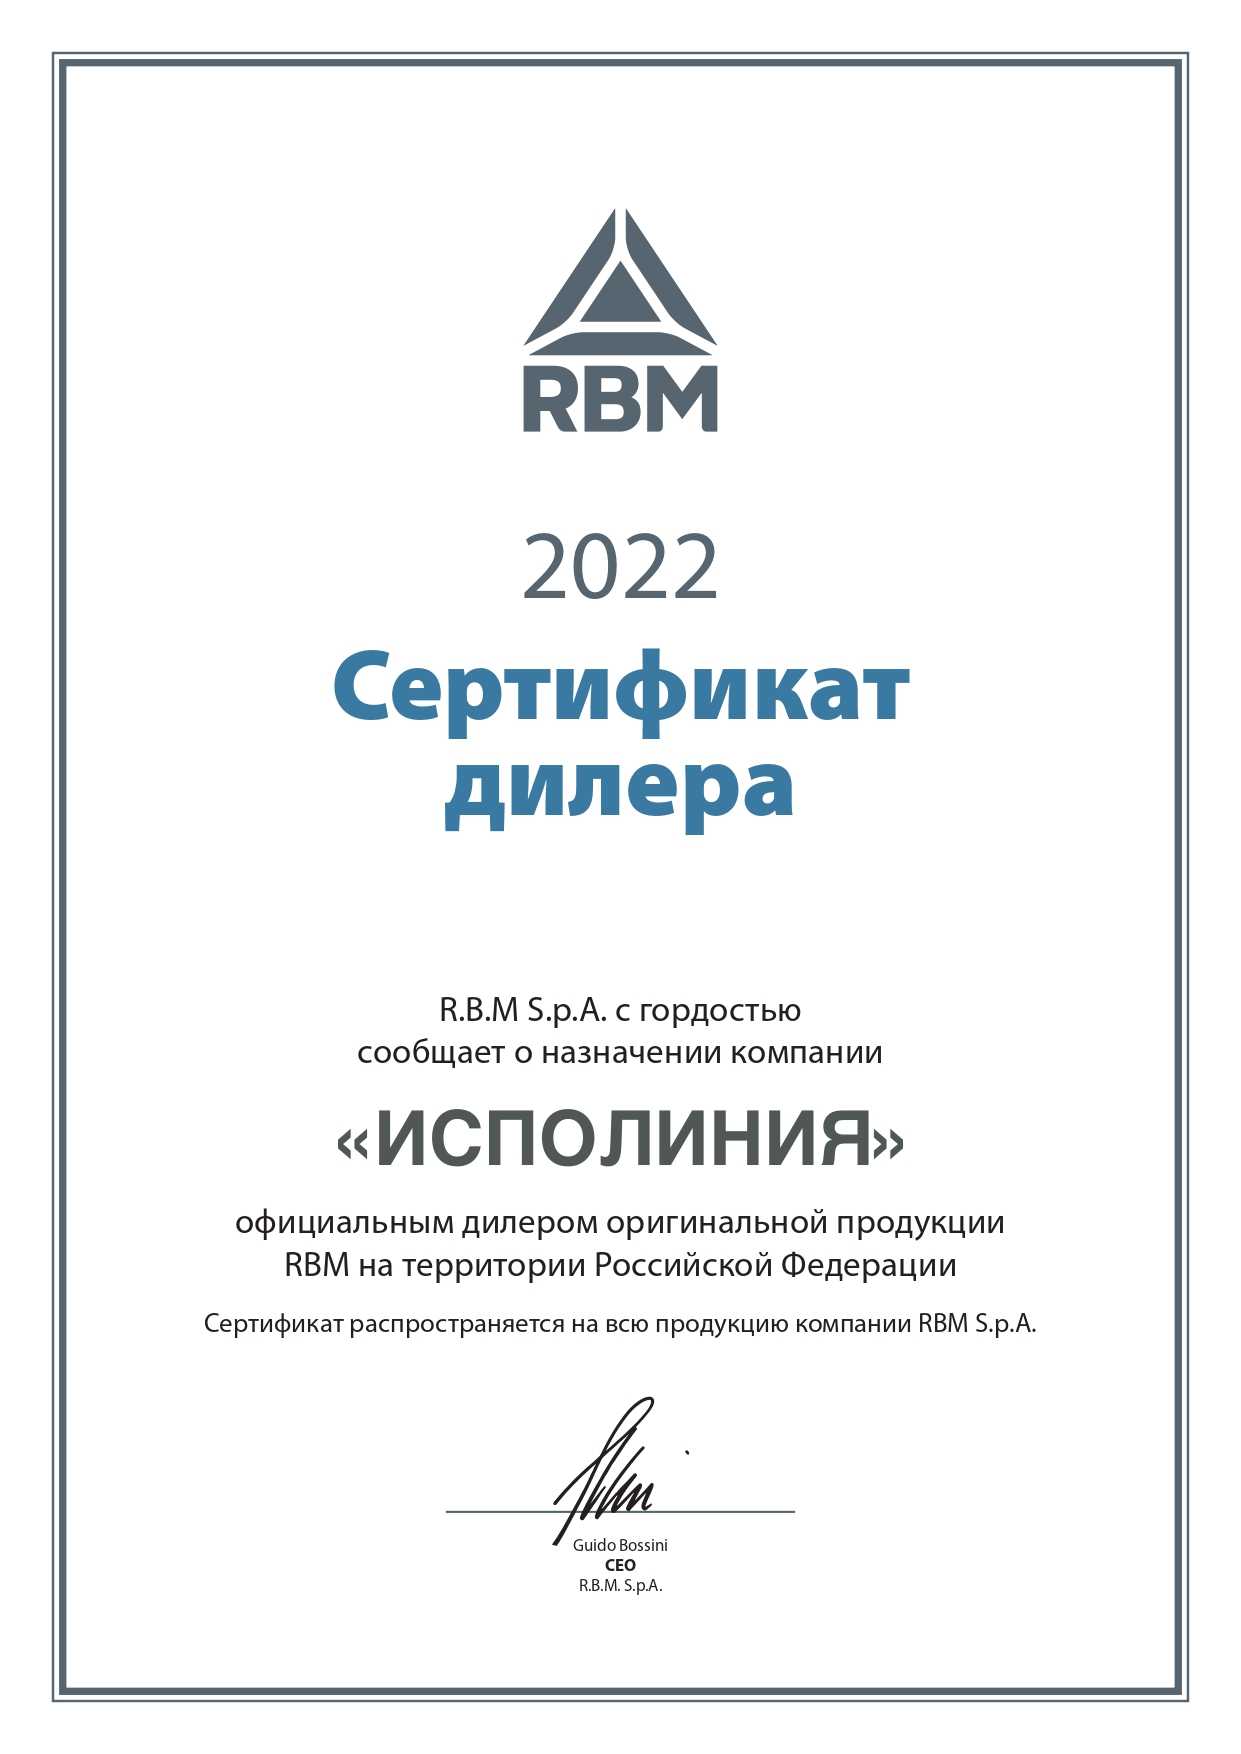 Изображение сертификата официального дилера